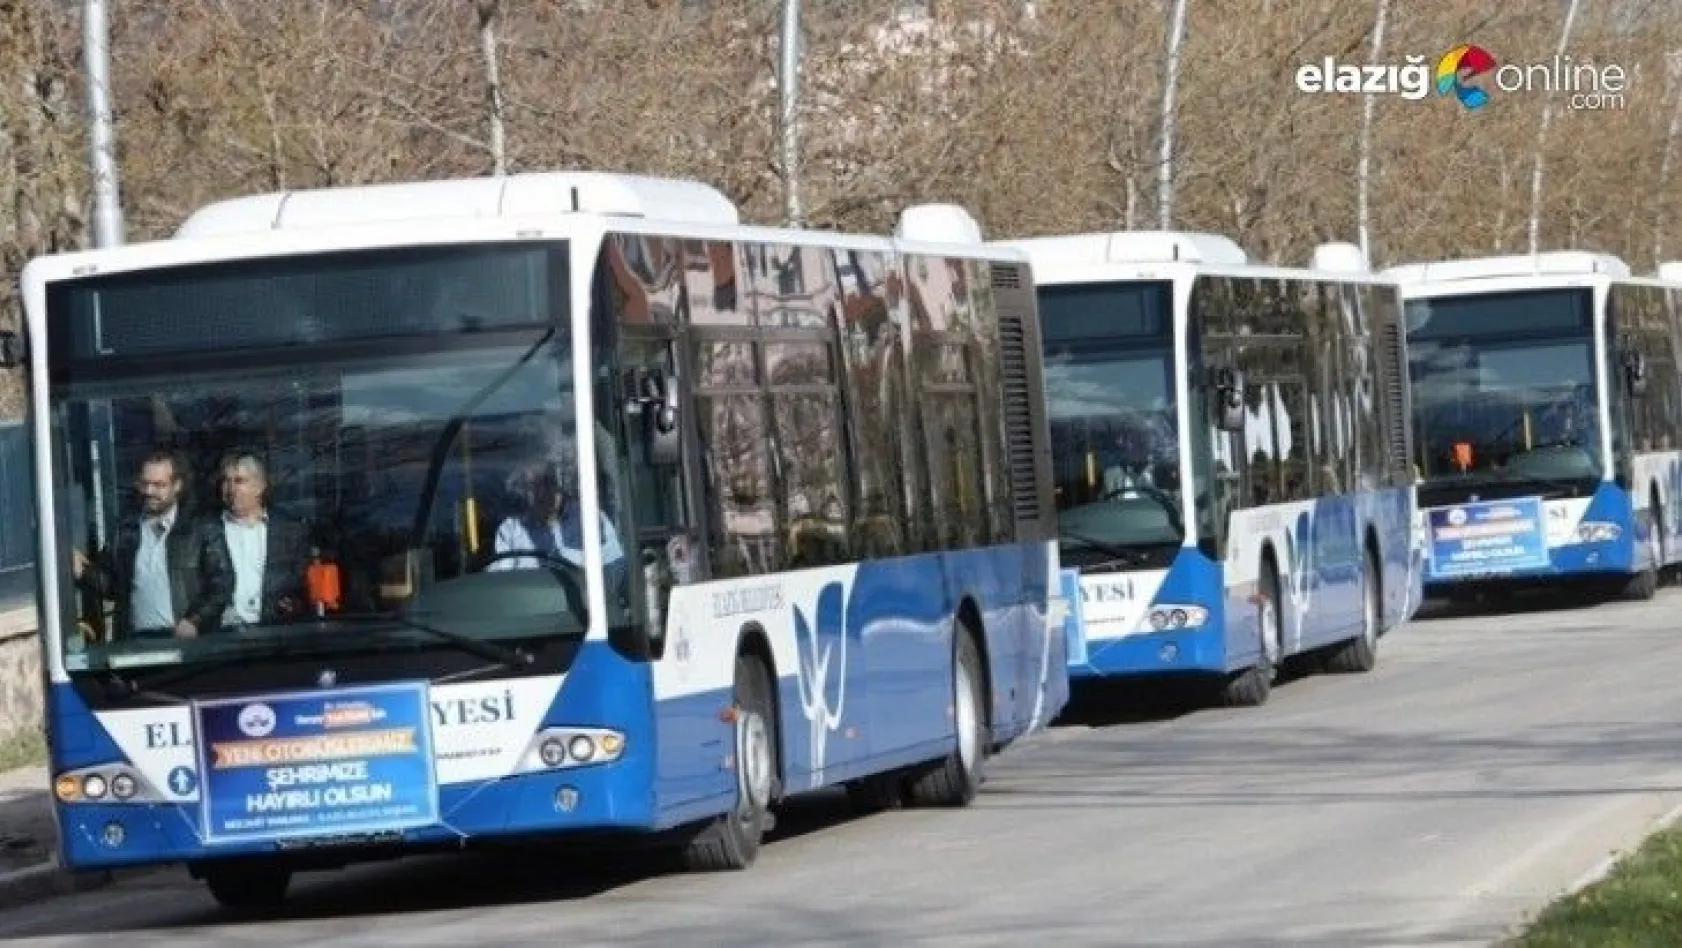 Elazığ Belediyesi otobüs sefer saatlerini yeniden düzenledi